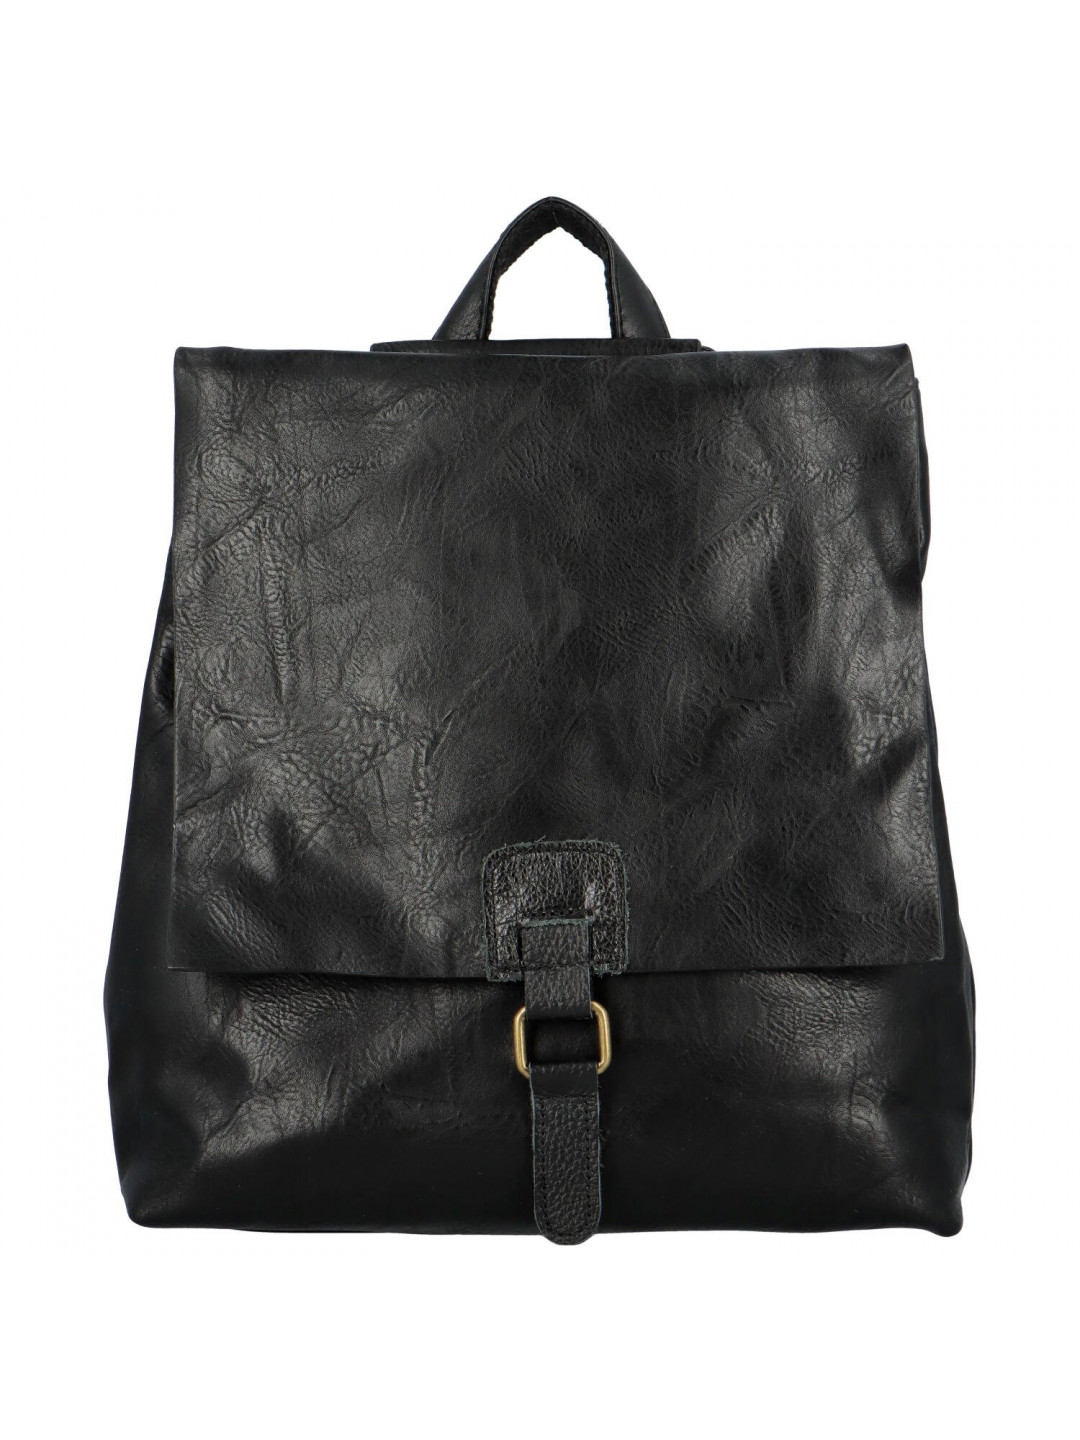 Stylový dámský kabelko-batoh Friditt černá